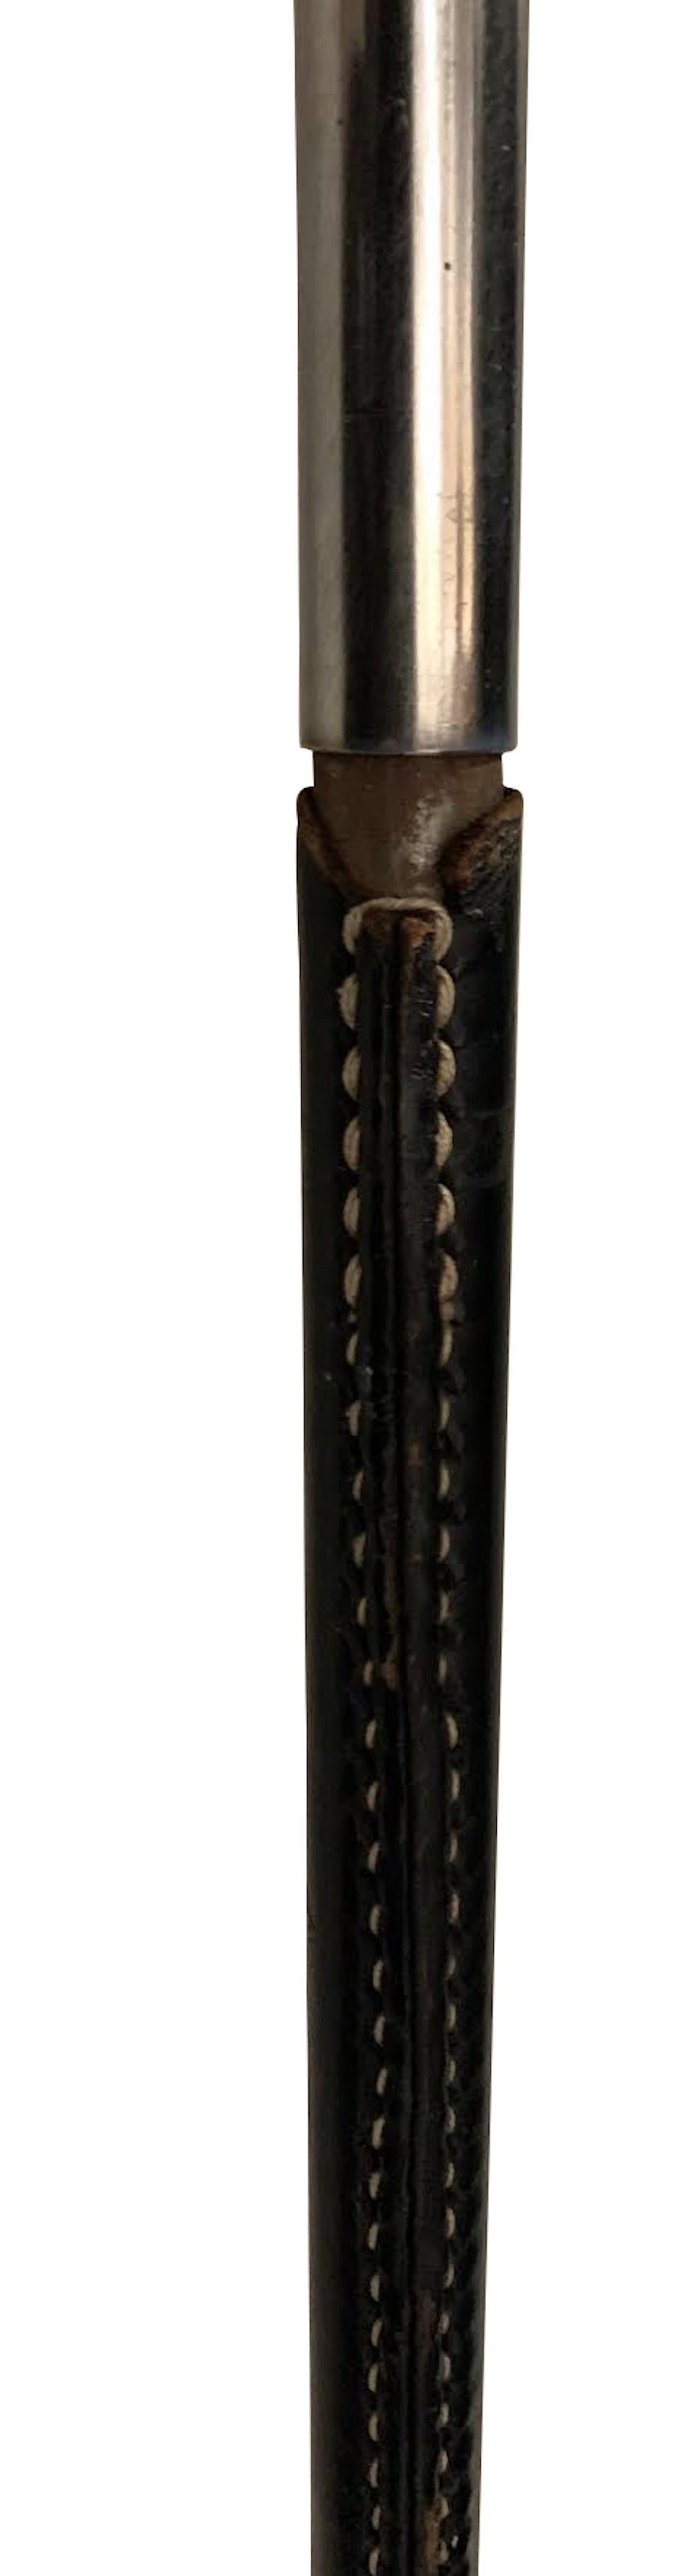 Spanische Stehlampe aus schwarzem Leder aus den 1960er Jahren.
Weiße Kontrastnähte.
Silberner Dreibein-Sockel.
Höhe der Leuchte 49